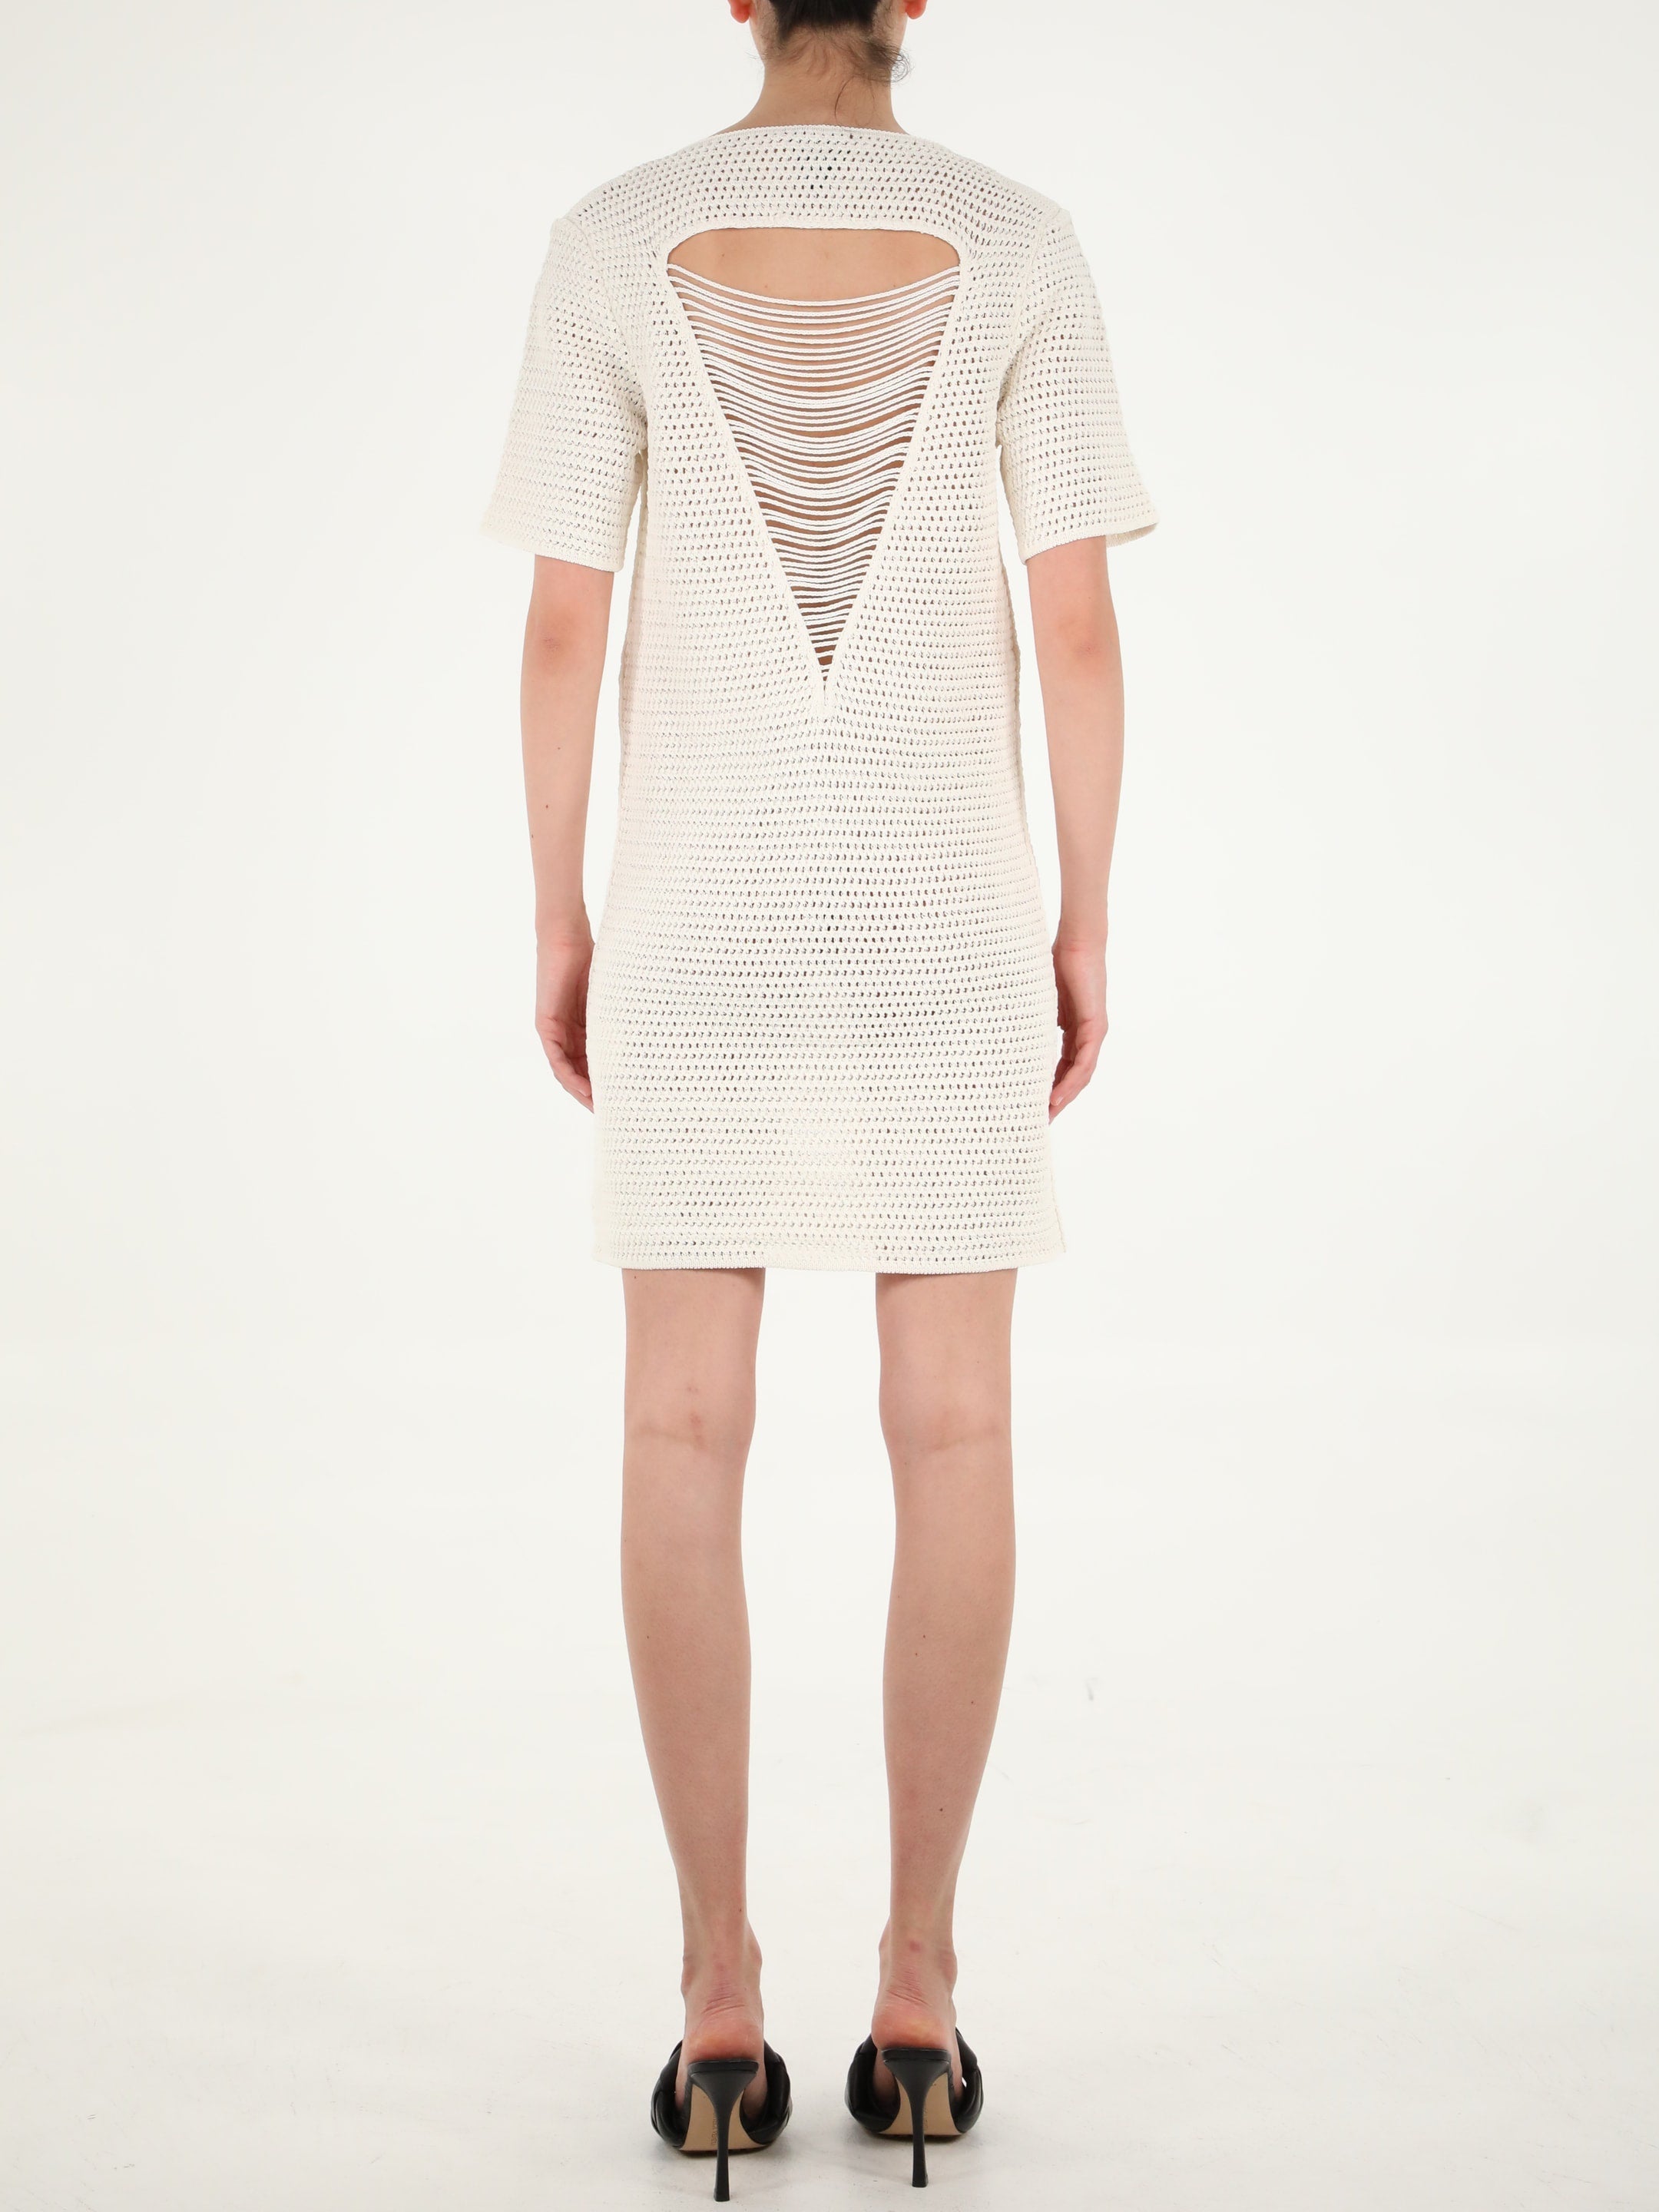 Crochet white dress